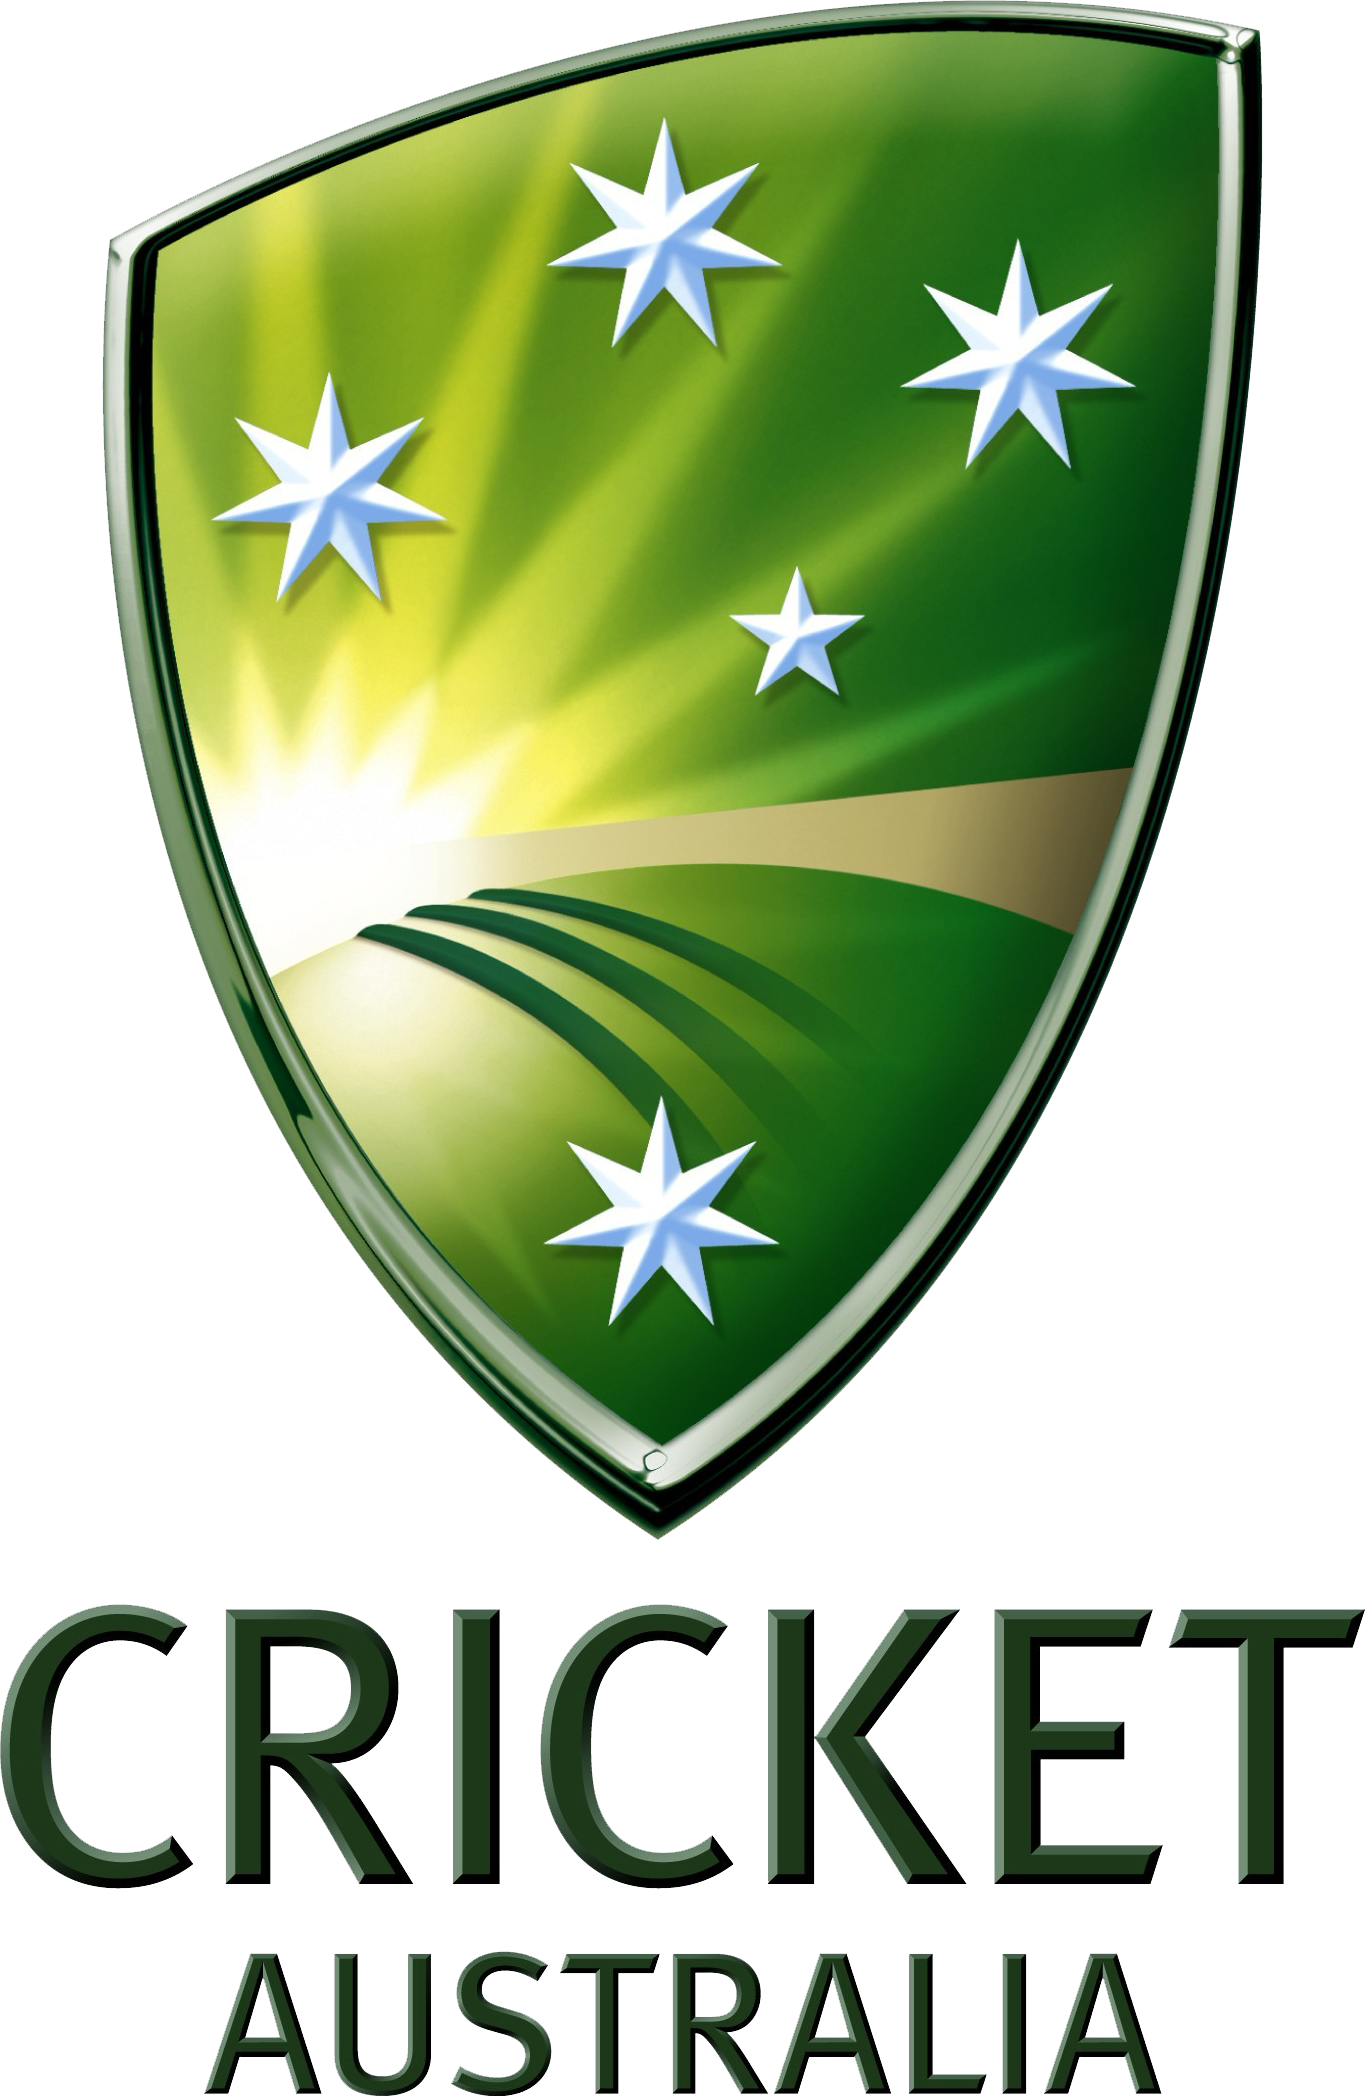 CricketAustralien